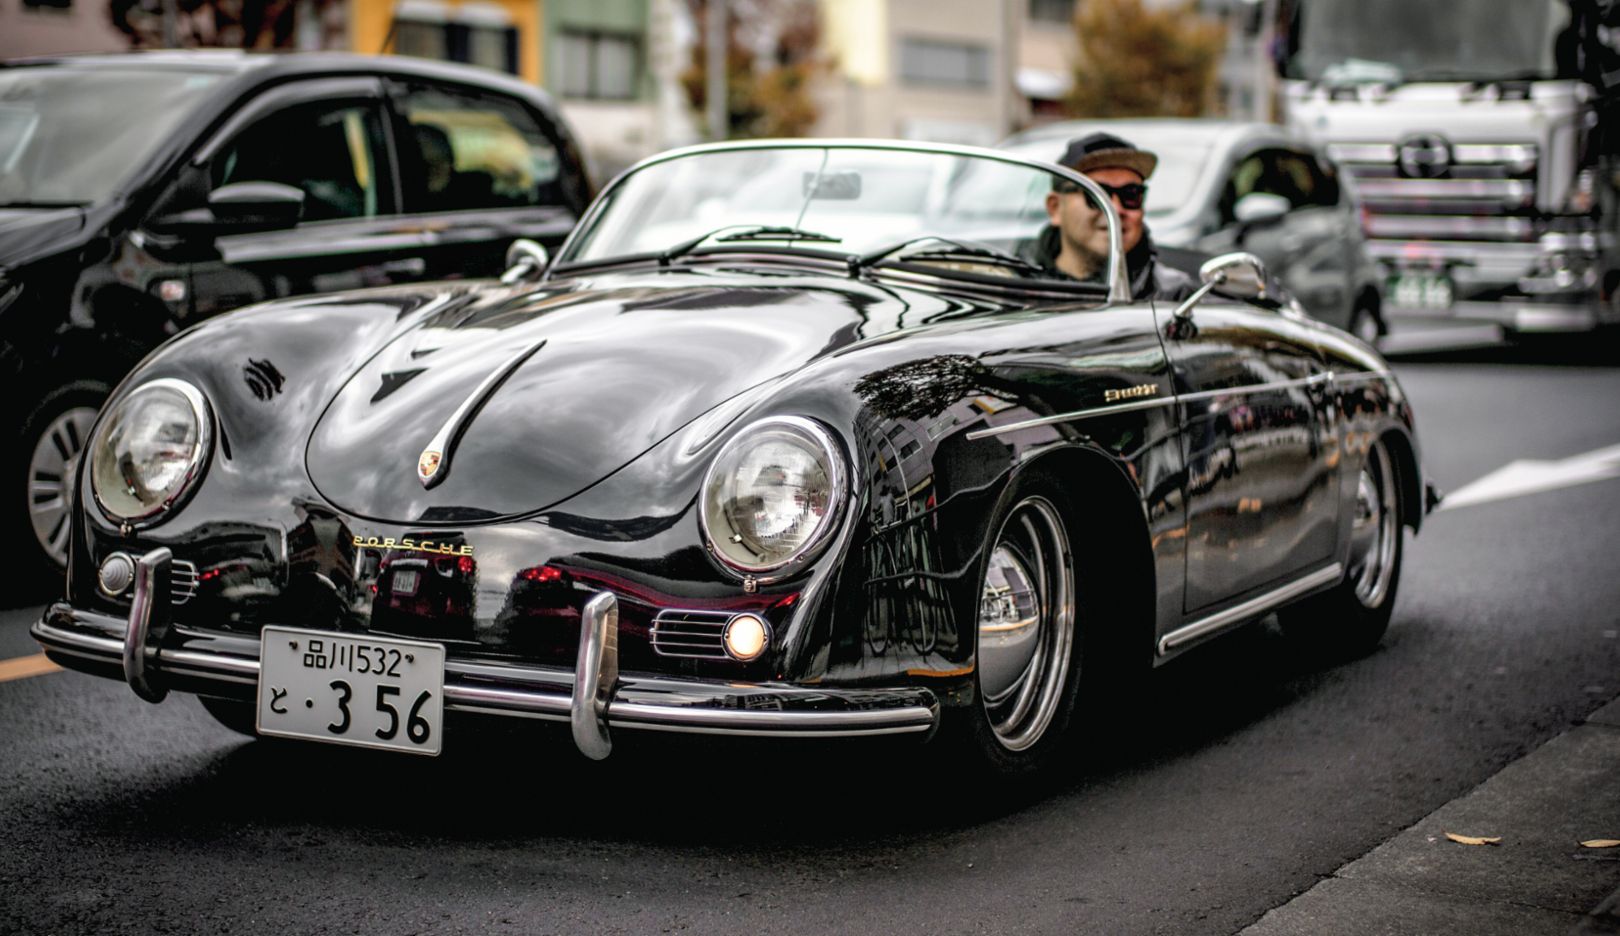 O momento: descoberto de passagem em Tóquio. Um Porsche – como este 356 Speedster – é sempre um bom motivo fotográfico